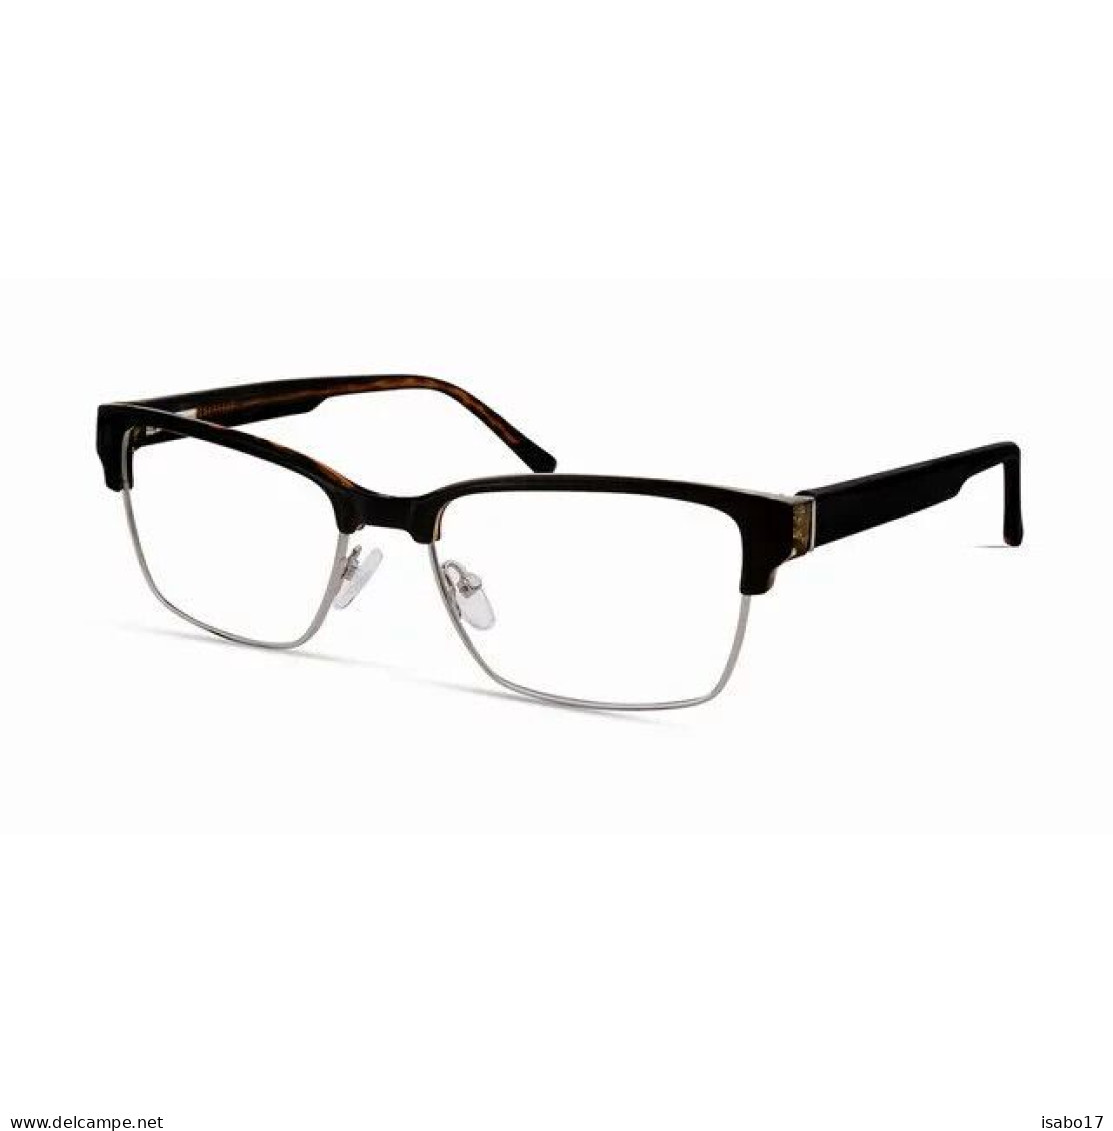 " Walmart " Modernes Herren-Brillengestell Mop49, Black Tortoise, 54-17-145 - Brillen